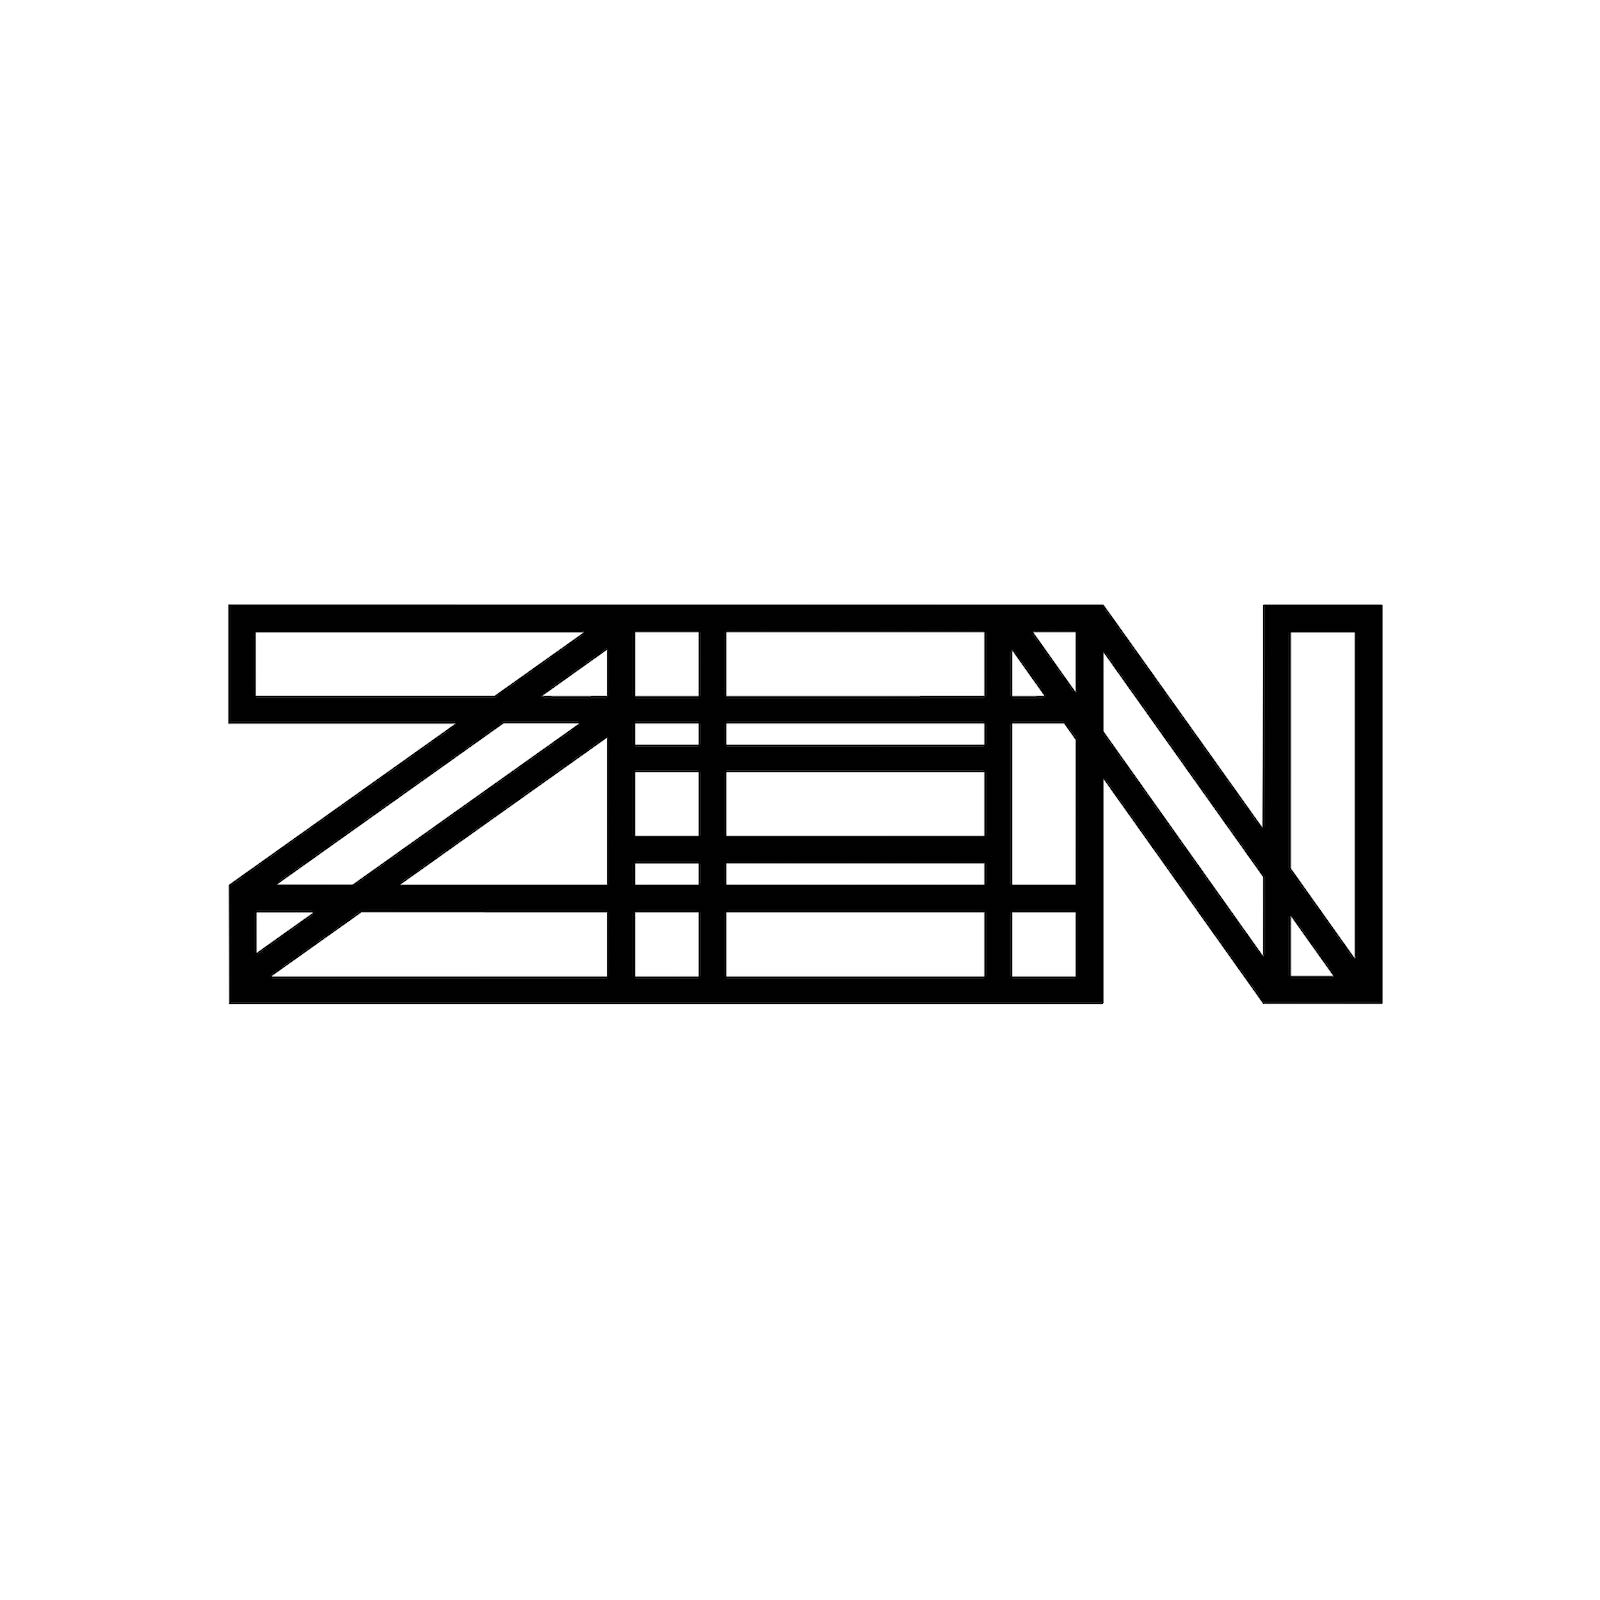 ZEN Environmental Design Logo | Takenobu Igarashi